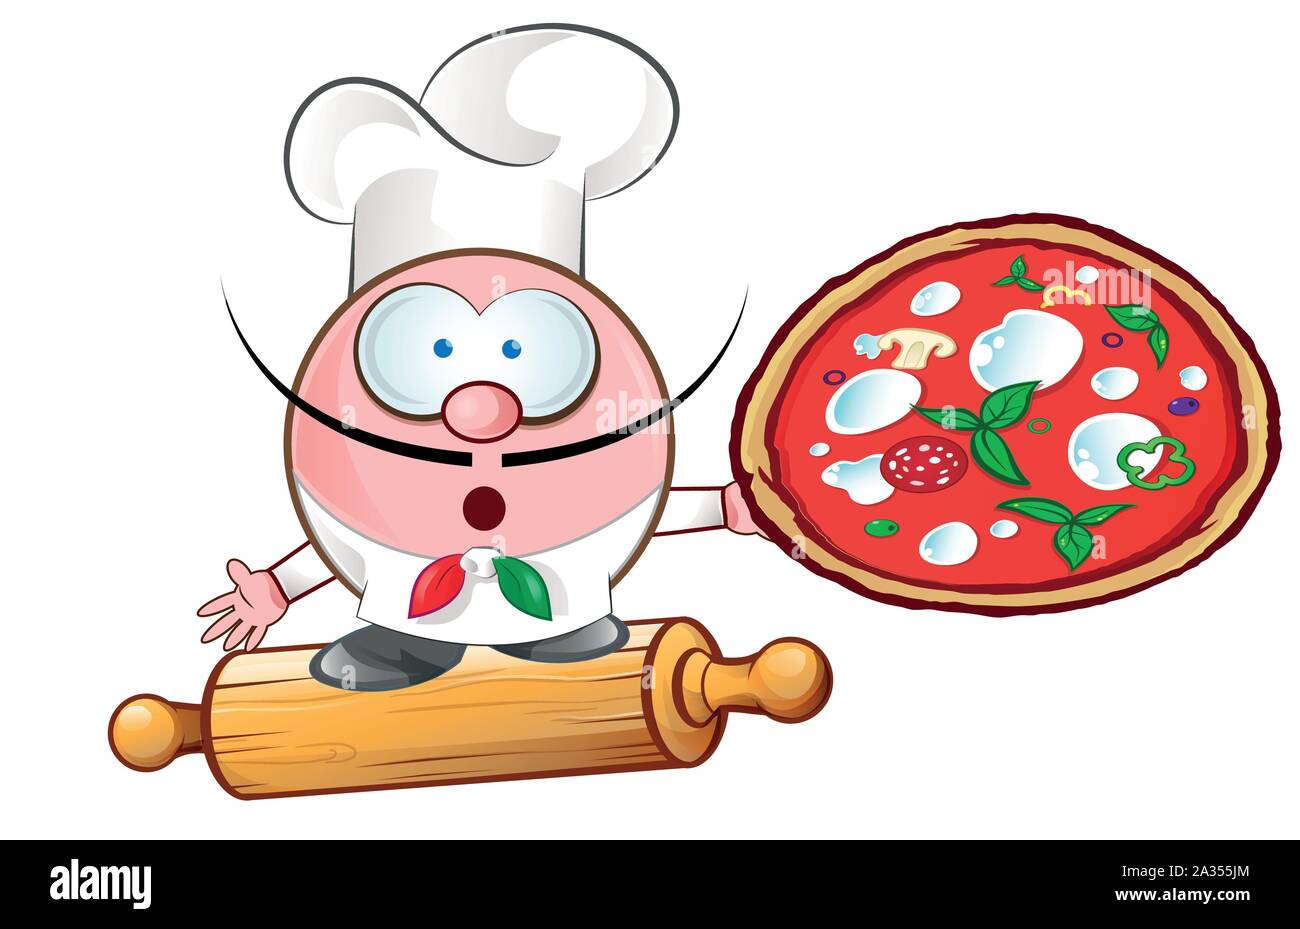 Pizza chef a Rollin pin.ilustración cartoon Ilustración del Vector